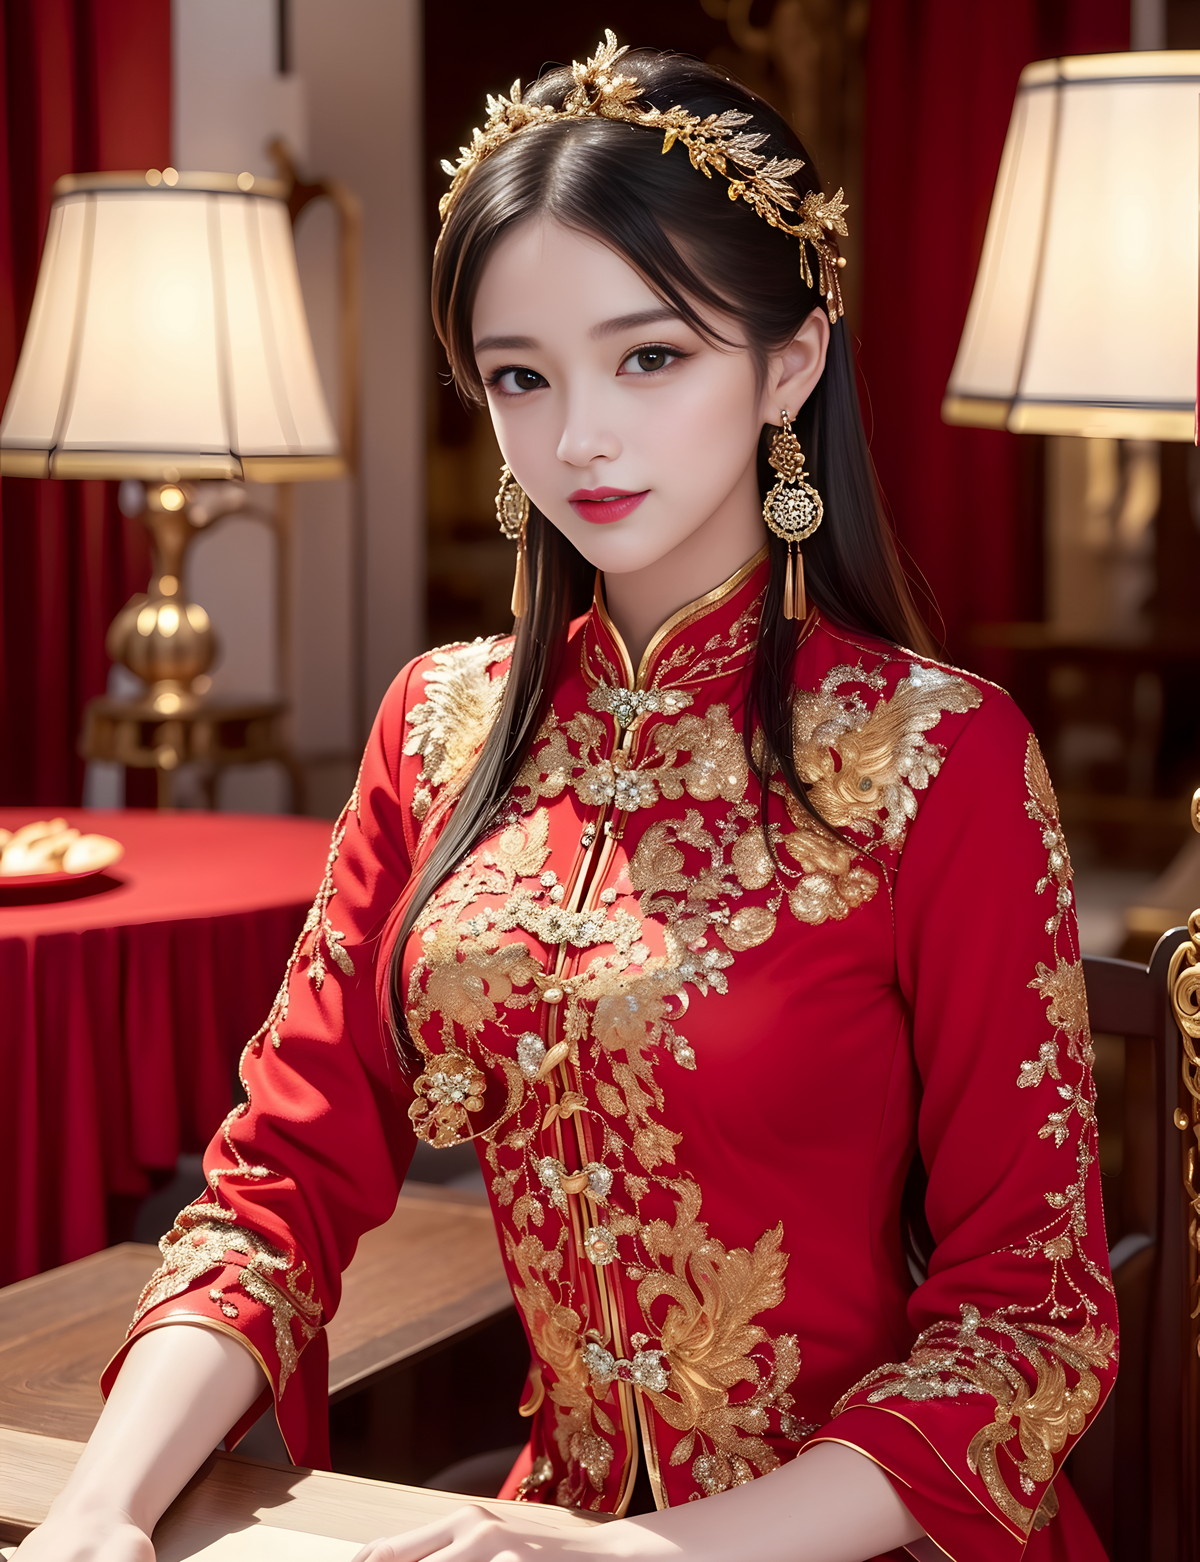 AI美图040期红嫁衣主题性感古典红色新娘妆完美迷人写真及下载36P - Xiuren.biz